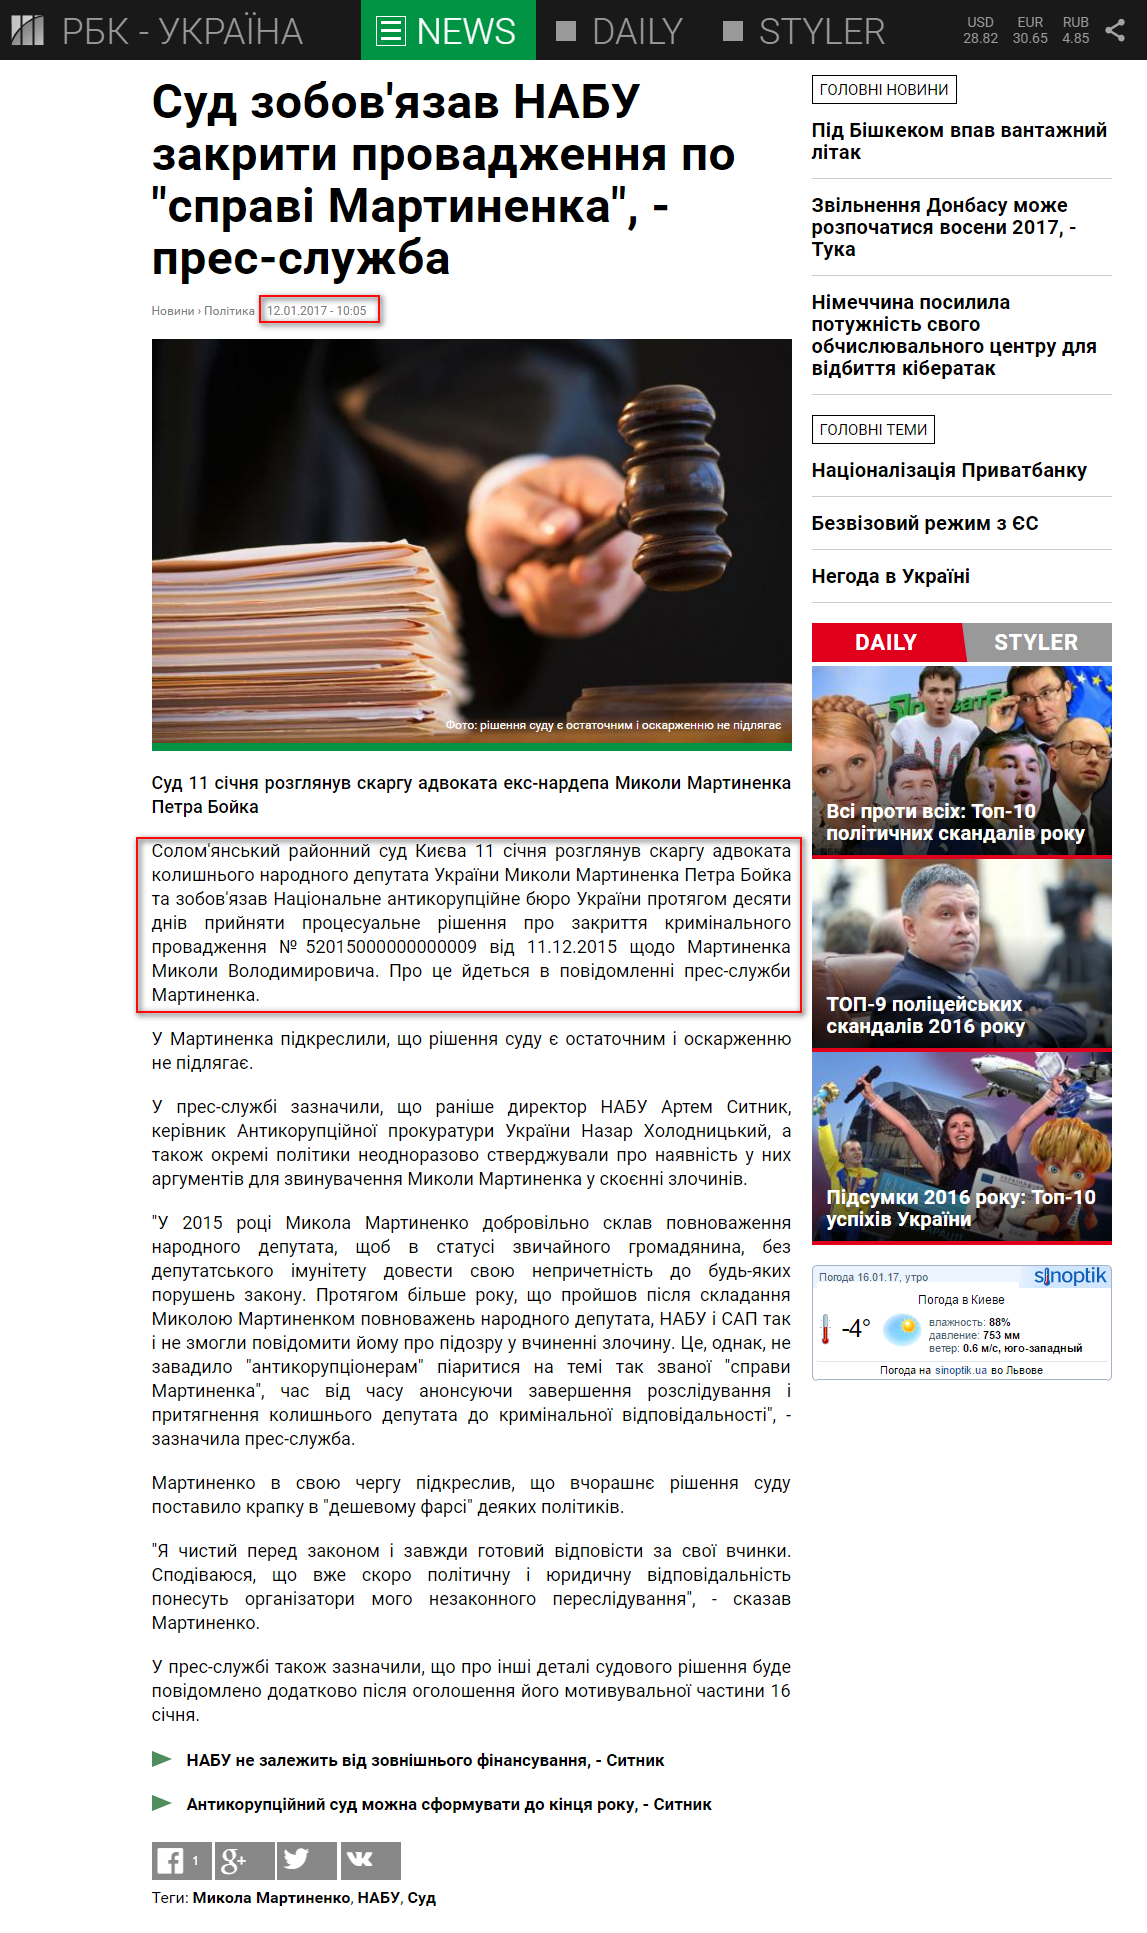 https://www.rbc.ua/ukr/news/sud-obyazal-nabu-zakryt-proizvodstvo-delu-1484208337.html